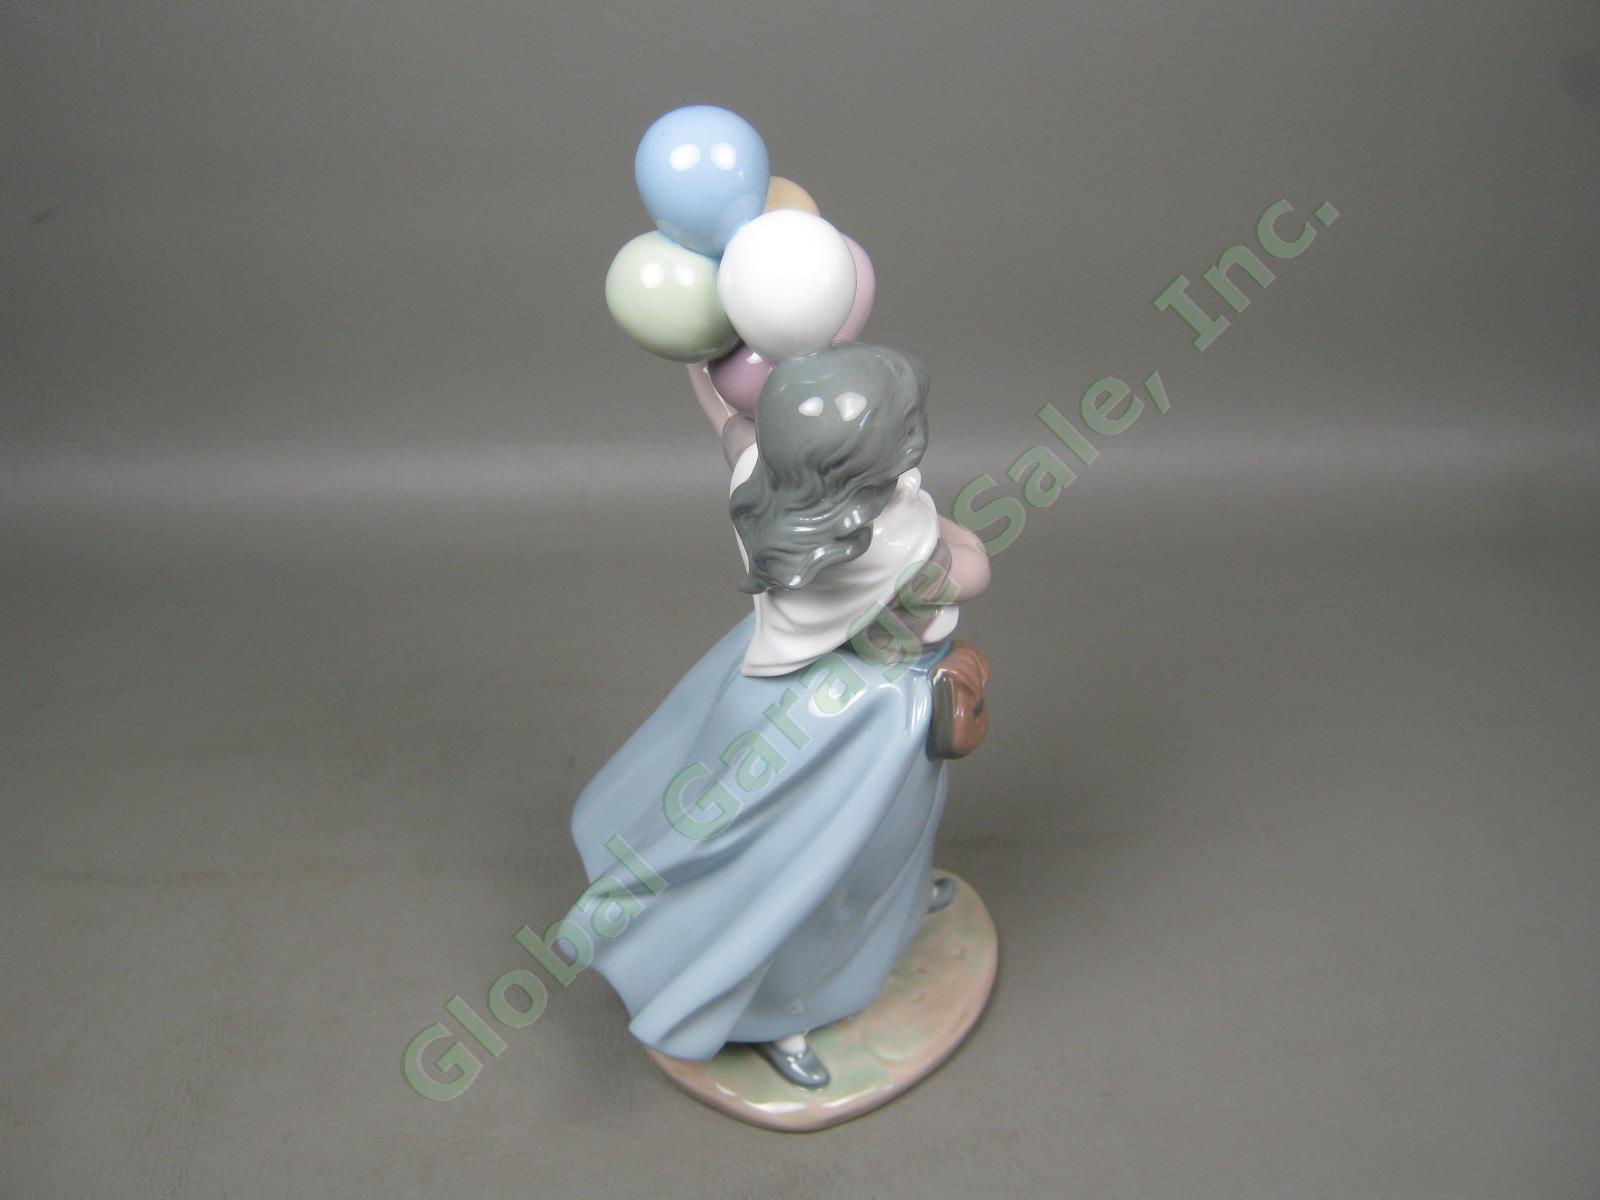 Vtg Retired Lladro Glossy Glazed Porcelain Balloon Seller Girl Figurine 10" 5141 3